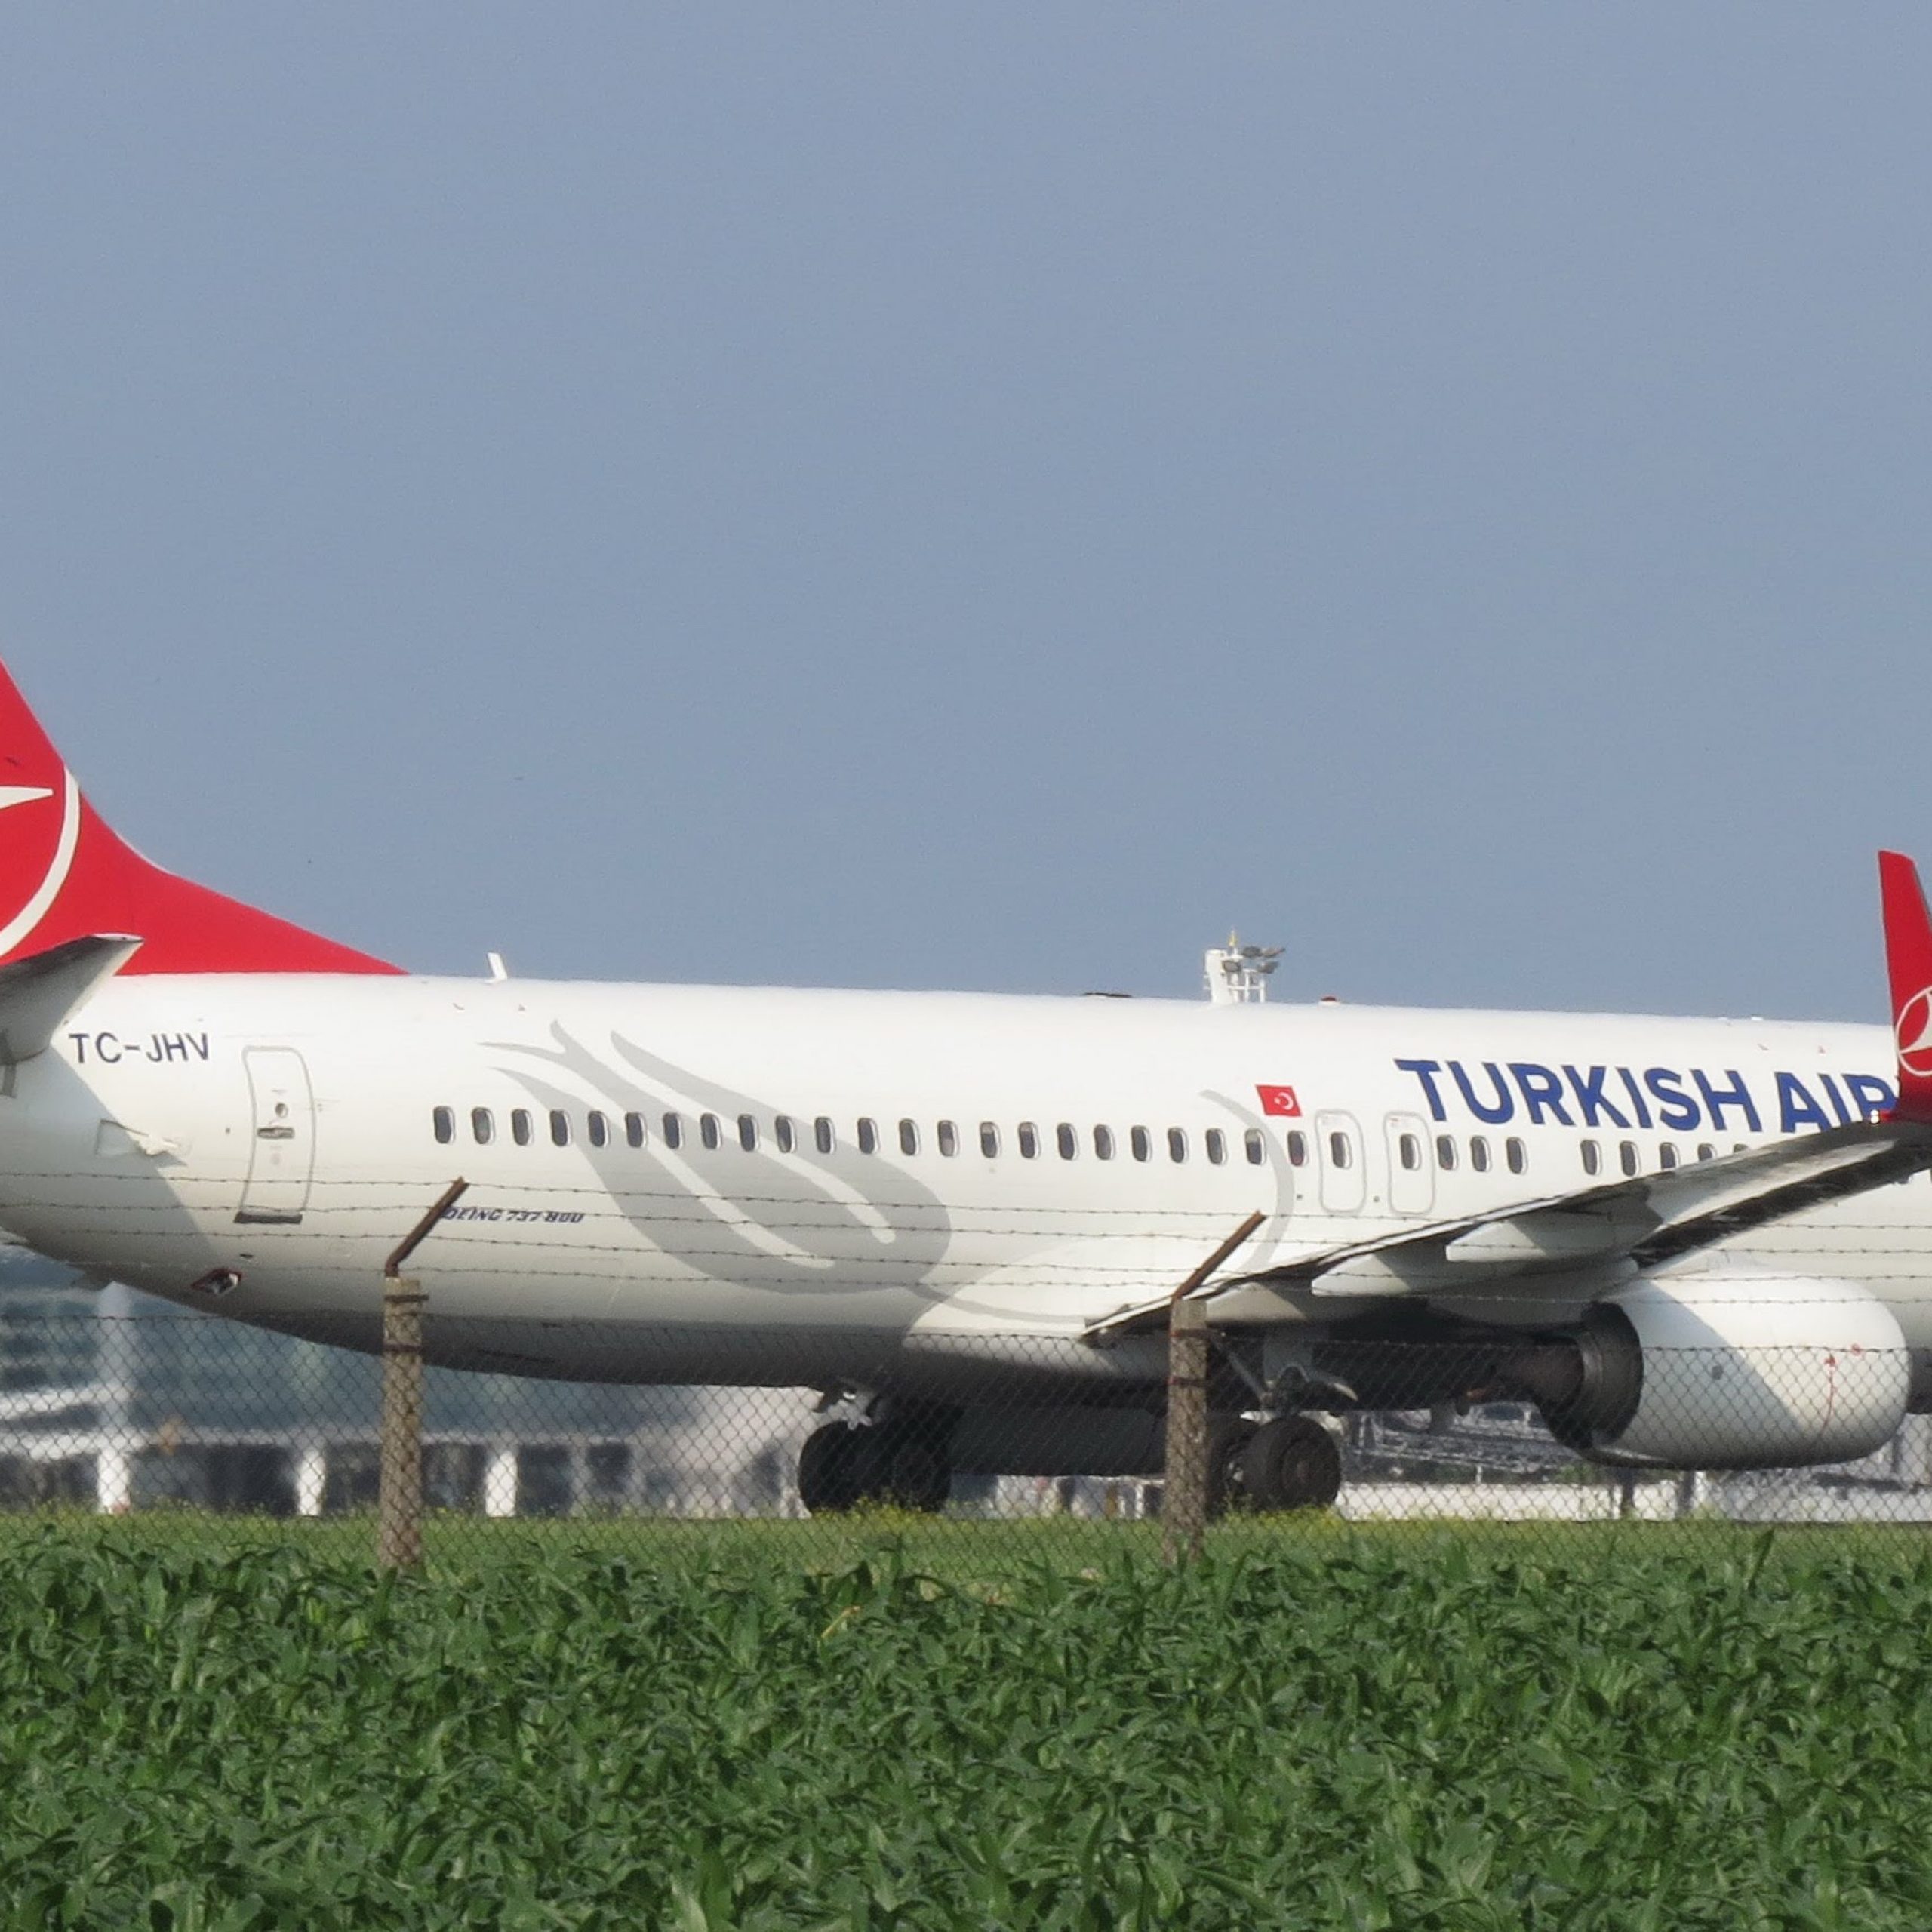 Turkey co. Боинг 737 Туркиш Эйрлайнс. Boeing 737-800 Turkish Airlines. Боинг 737 турецкие авиалинии. Boeing 737-800 Туркиш Эйрлайнс.